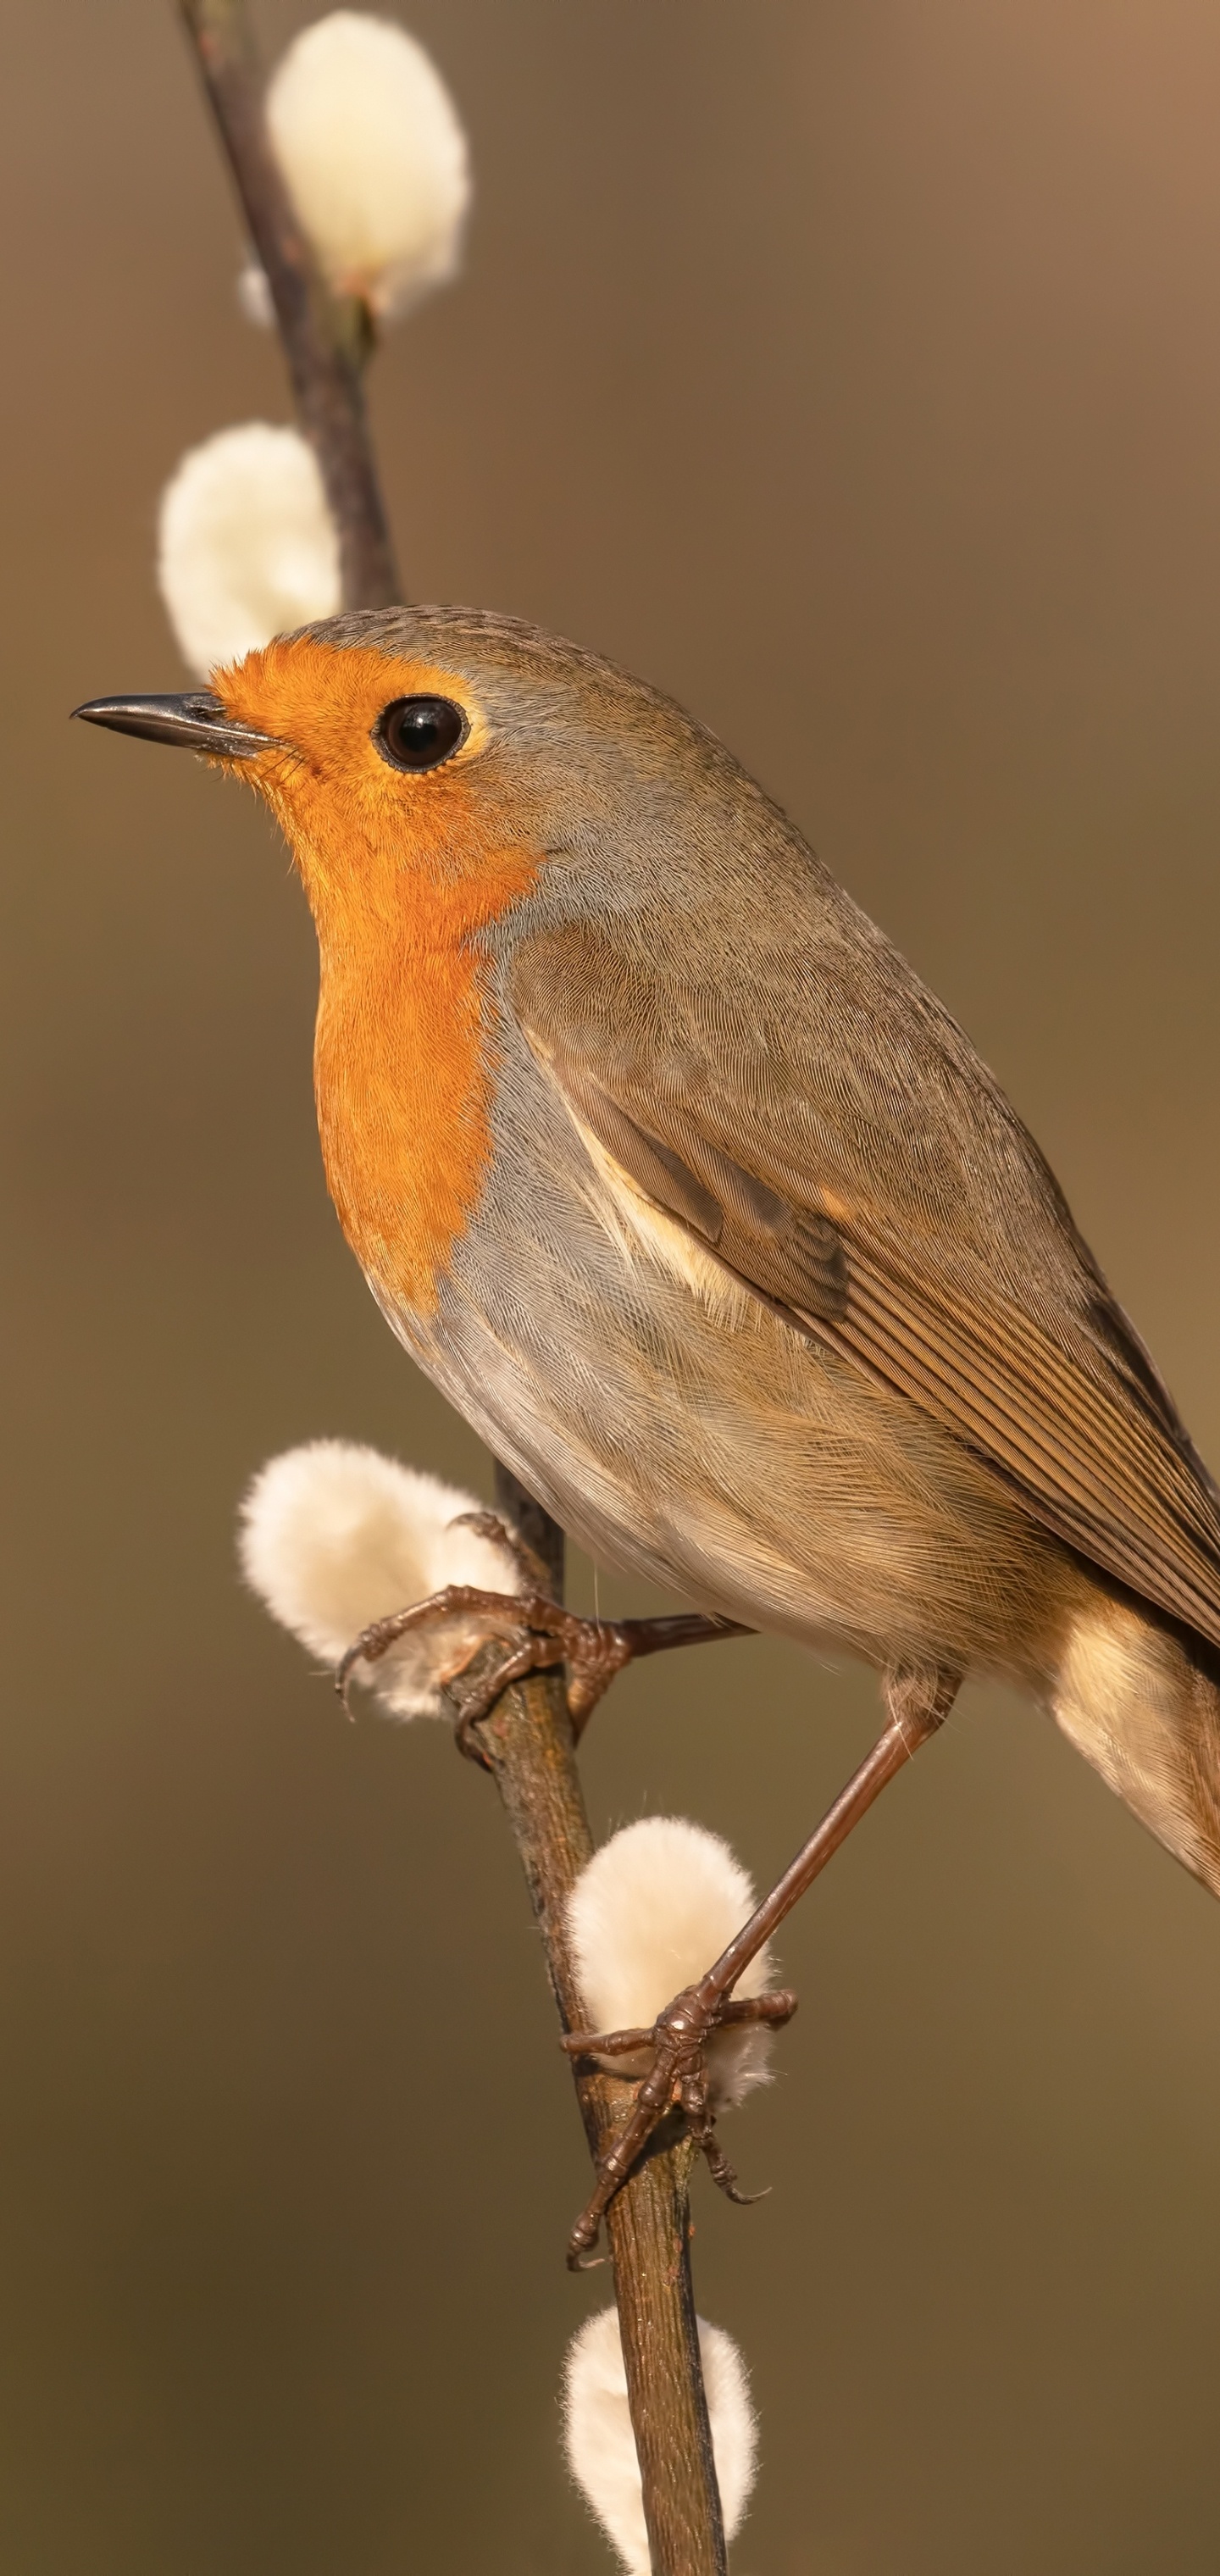 Robin bird, Songbird species, Distinctive orange breast, Chirping melodies, 1440x3040 HD Handy